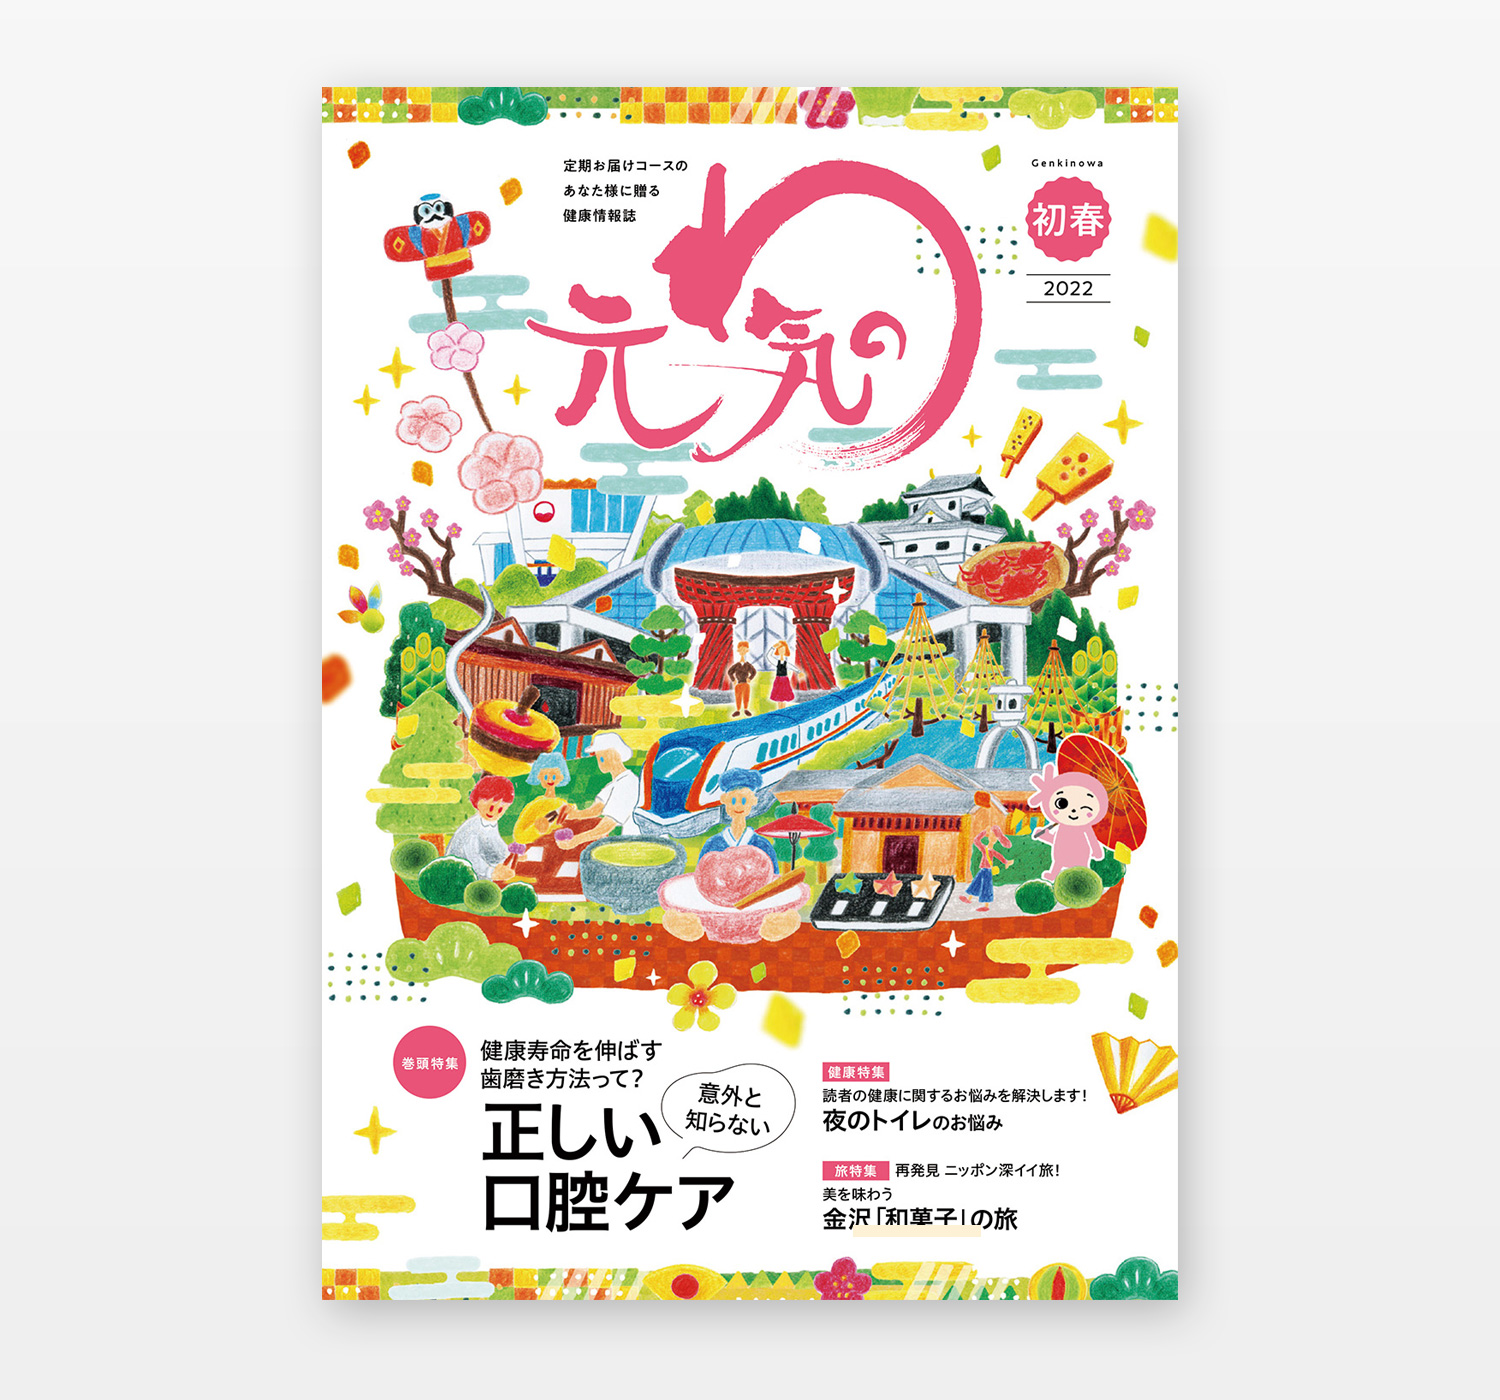 日本薬師堂 会報誌「元気のわ」表紙イラスト 正月号「金沢・和菓子」